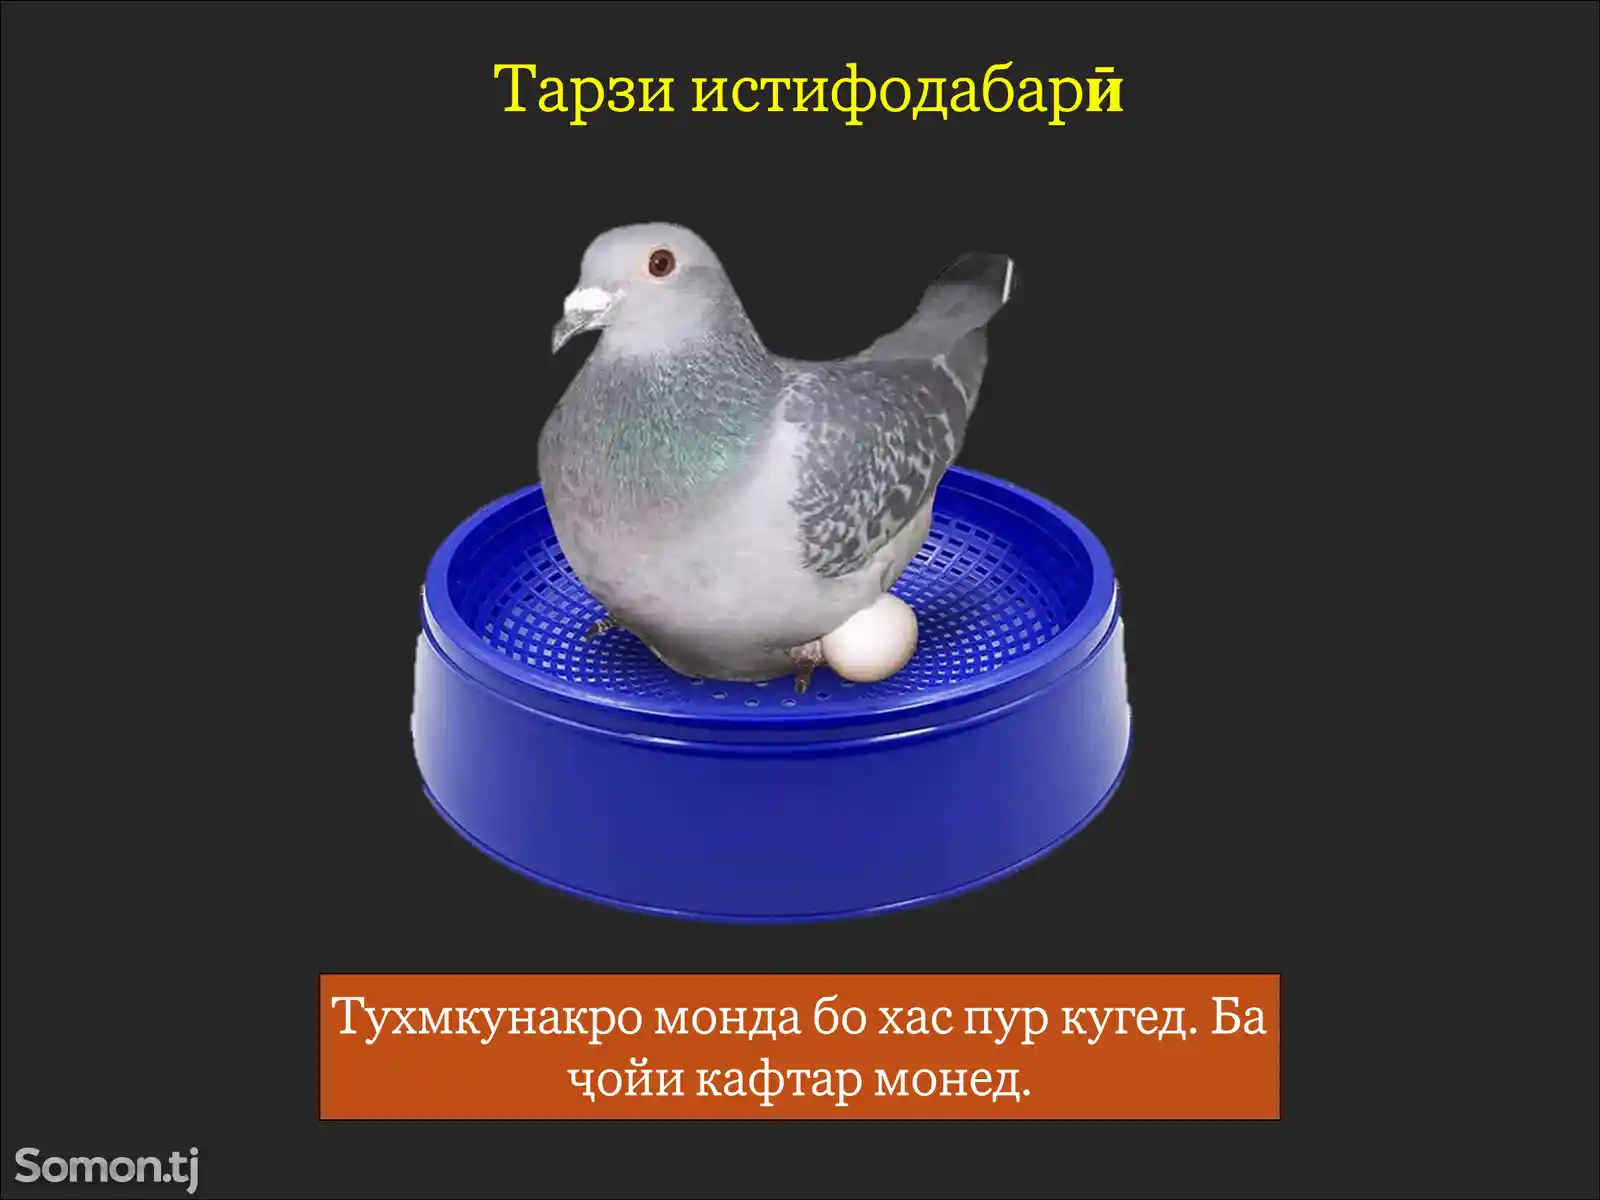 Лона/Пластиковое гнездо для голубей-4